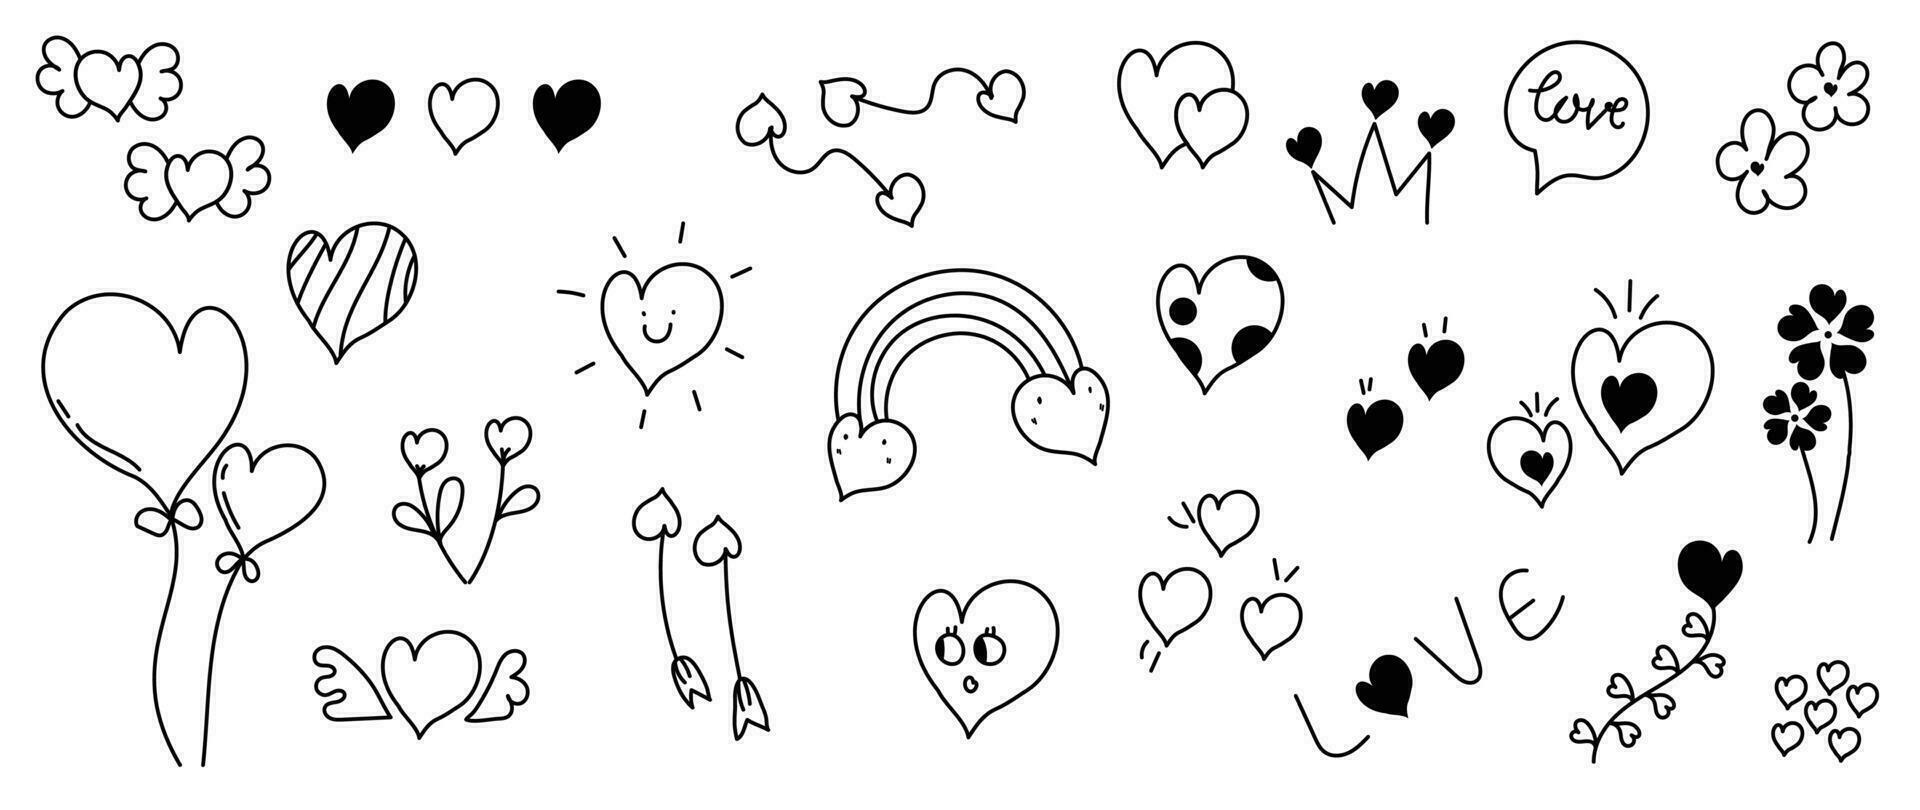 uppsättning av valentine klotter element vektor. hand dragen klotter stil samling av annorlunda hjärta former, regnbåge, pilar, blomma, ballong, krona. design för skriva ut, tecknad serie, kort, dekoration, klistermärke. vektor